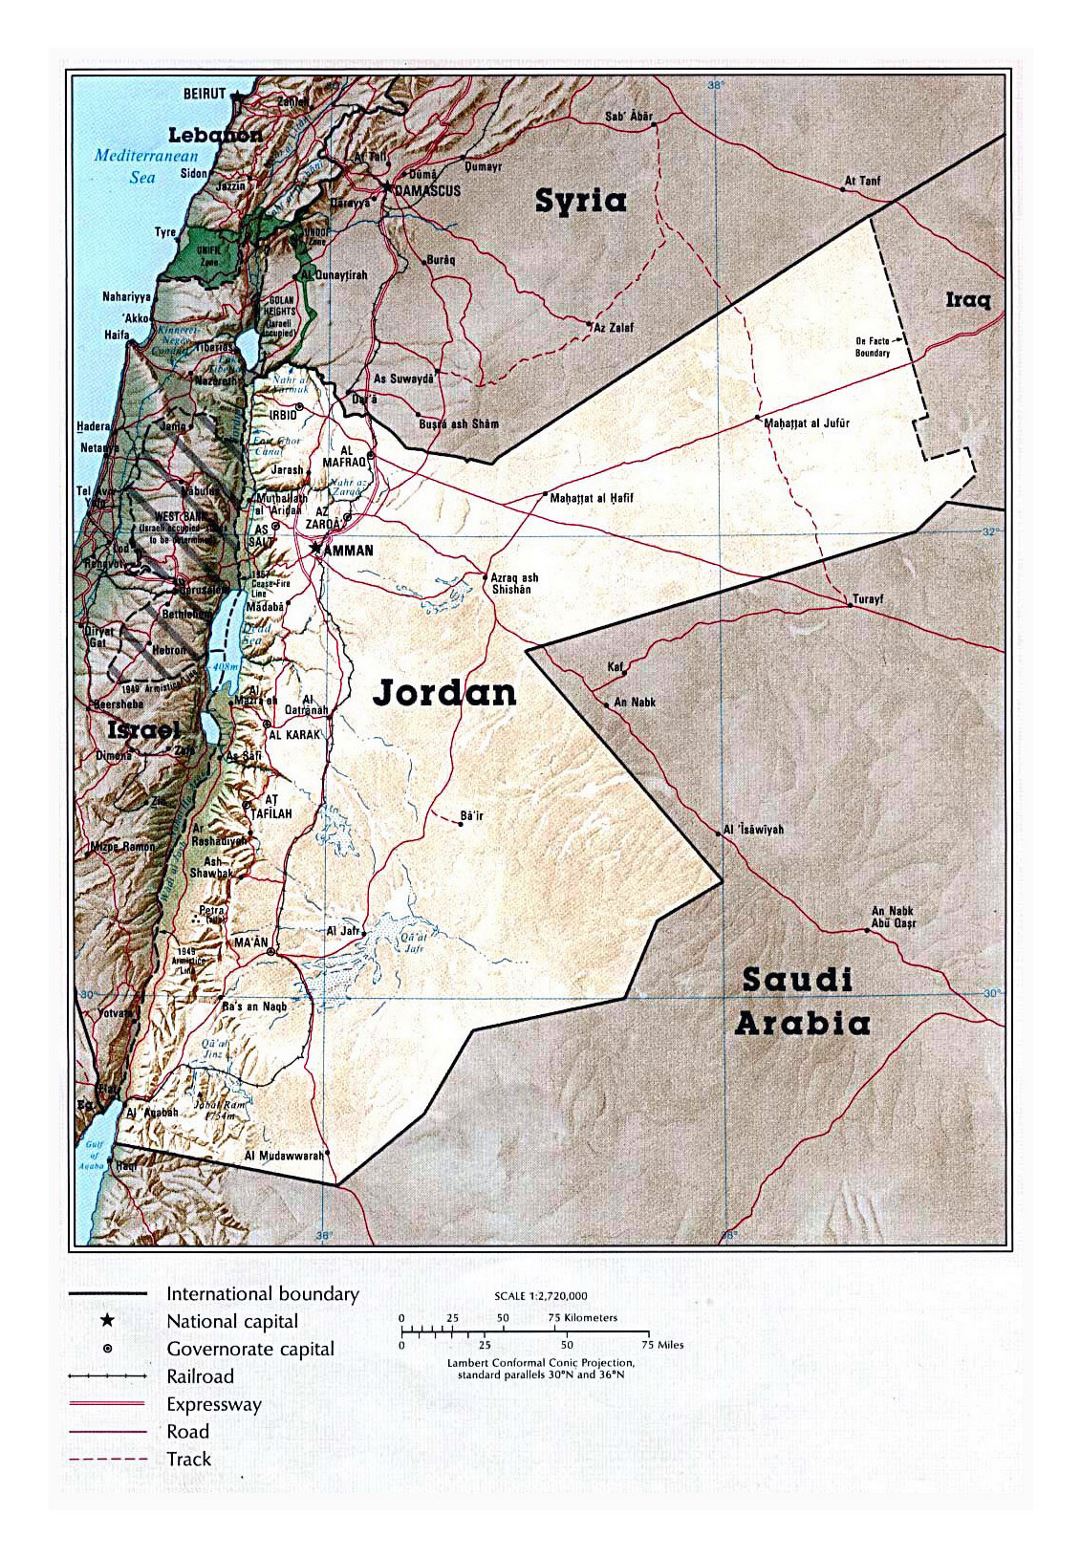 Detallado mapa político de Jordania con relieve, carreteras, ferrocarriles y grandes ciudades